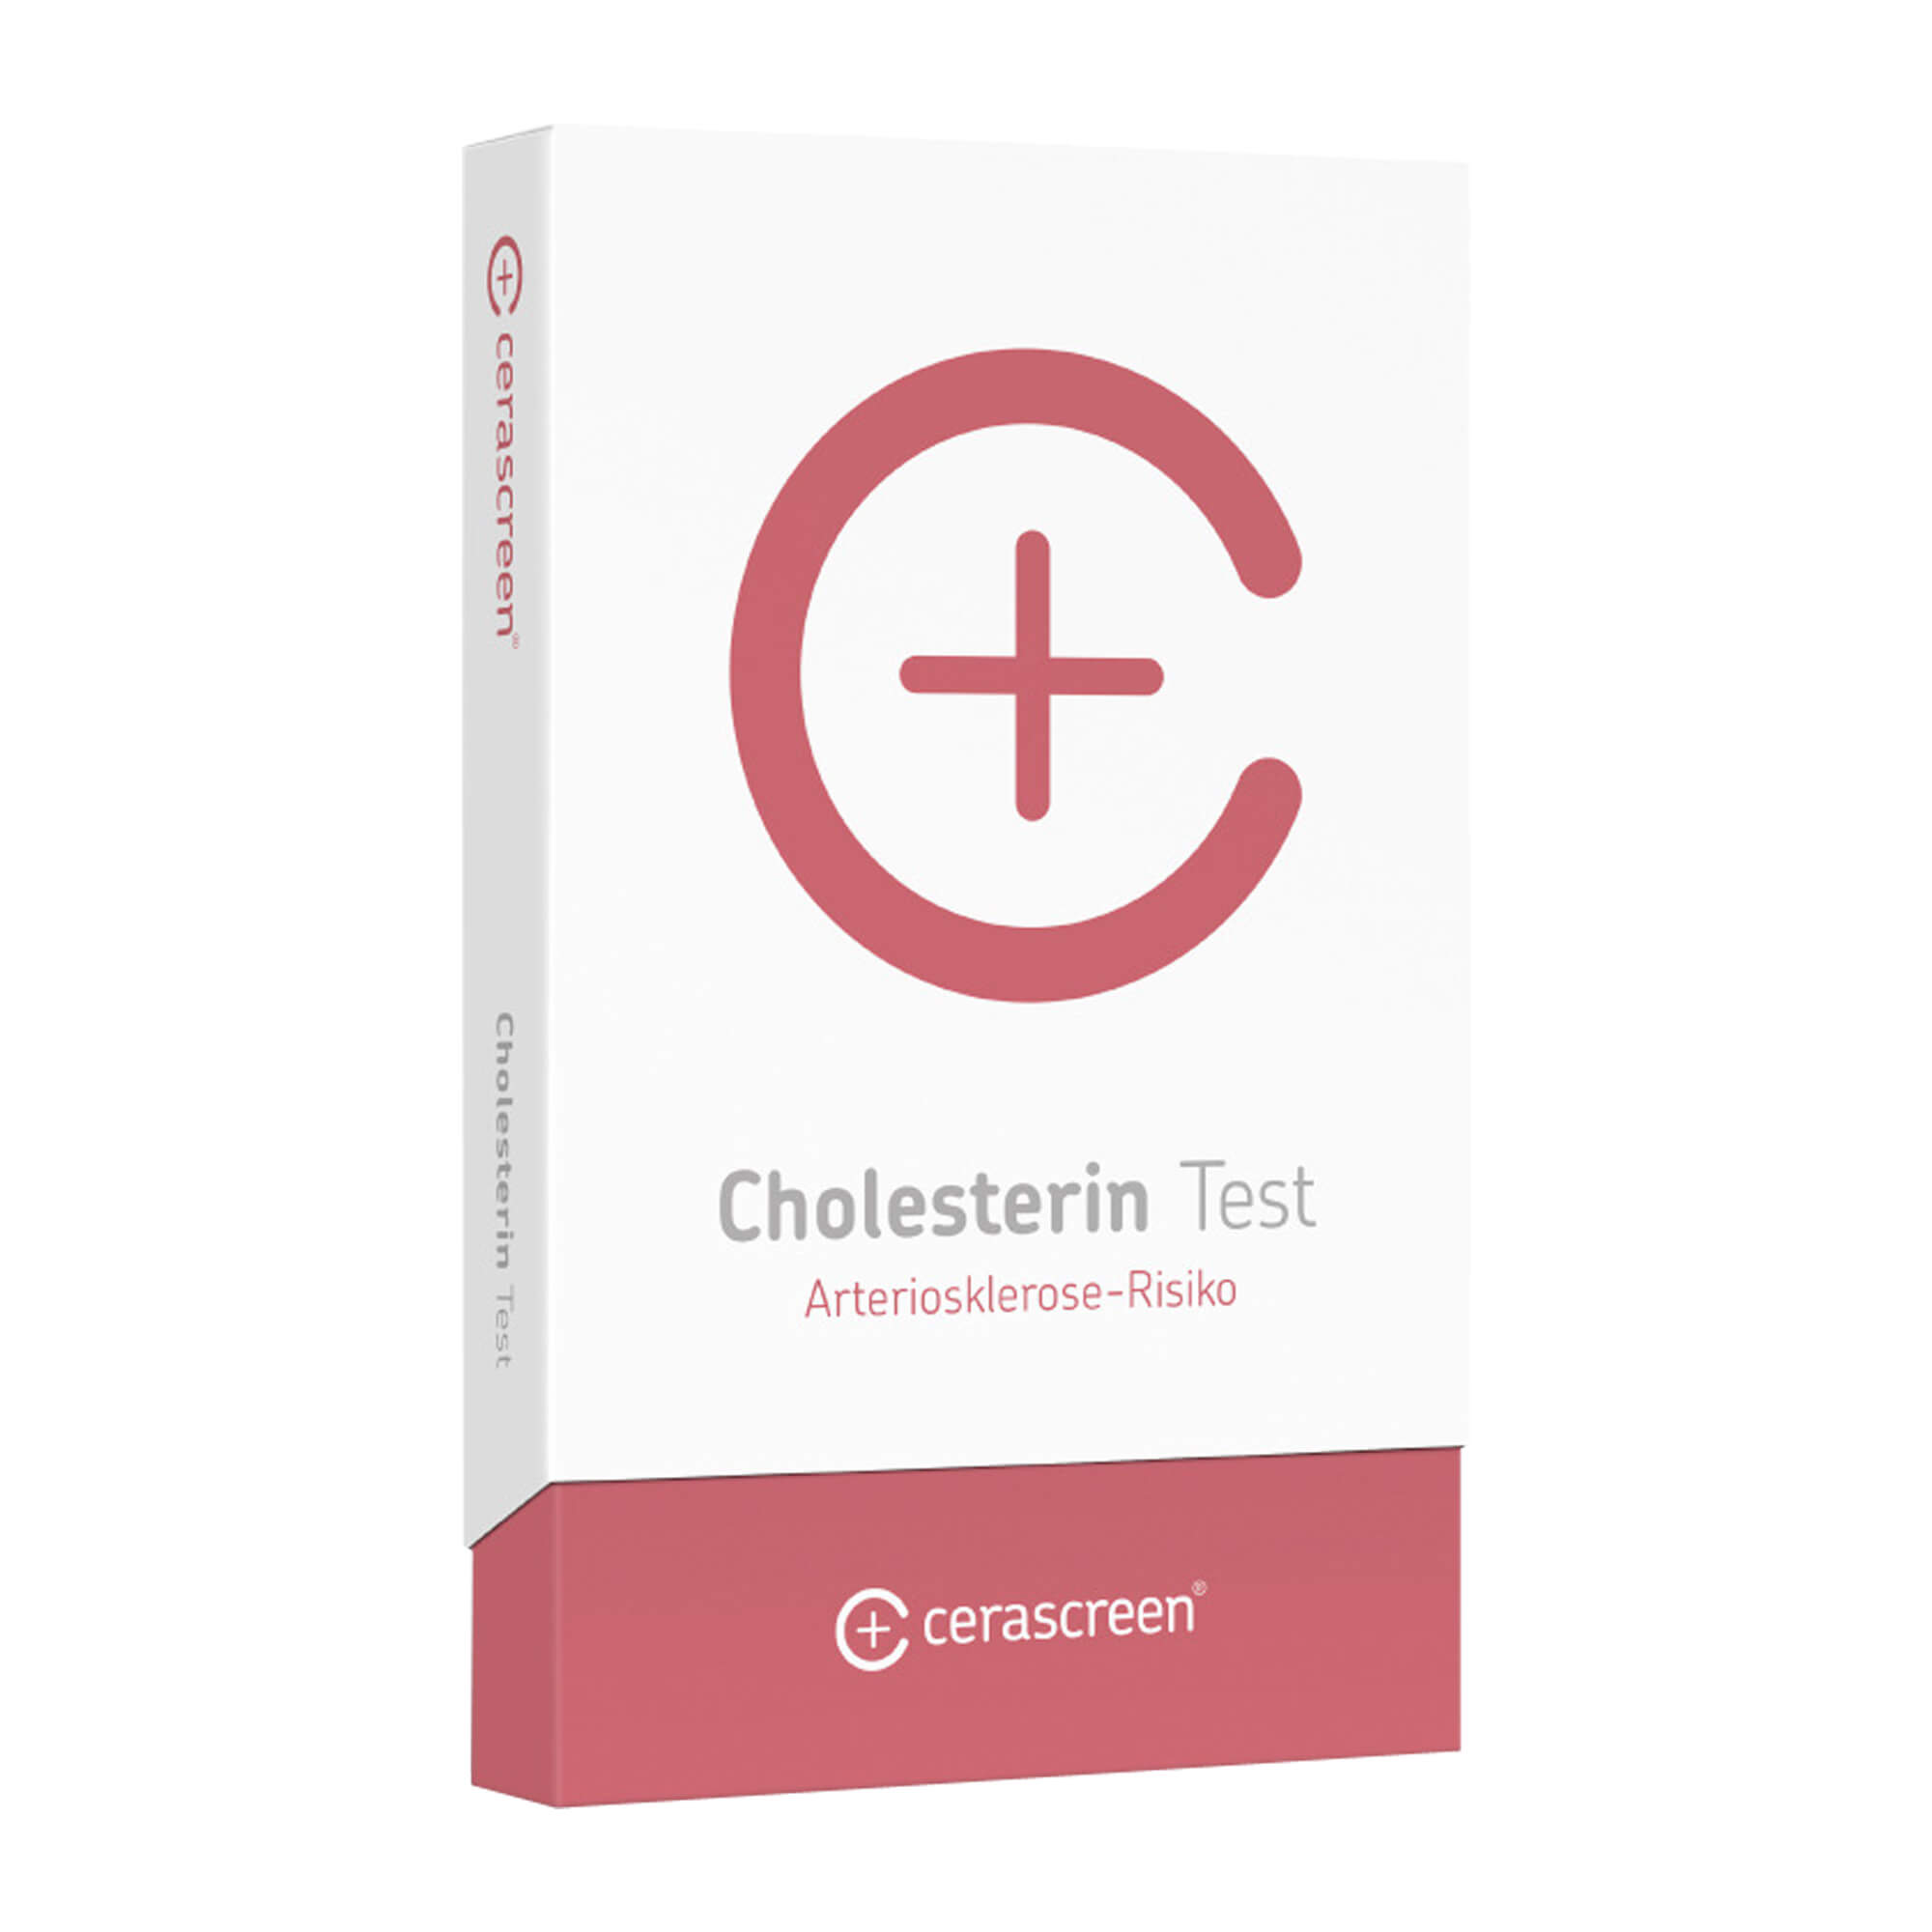 Testkit zur Ermittlung des Cholesterin-, HDL- und LDL-Spiegels sowie des LDL/HDL-Quotienten.